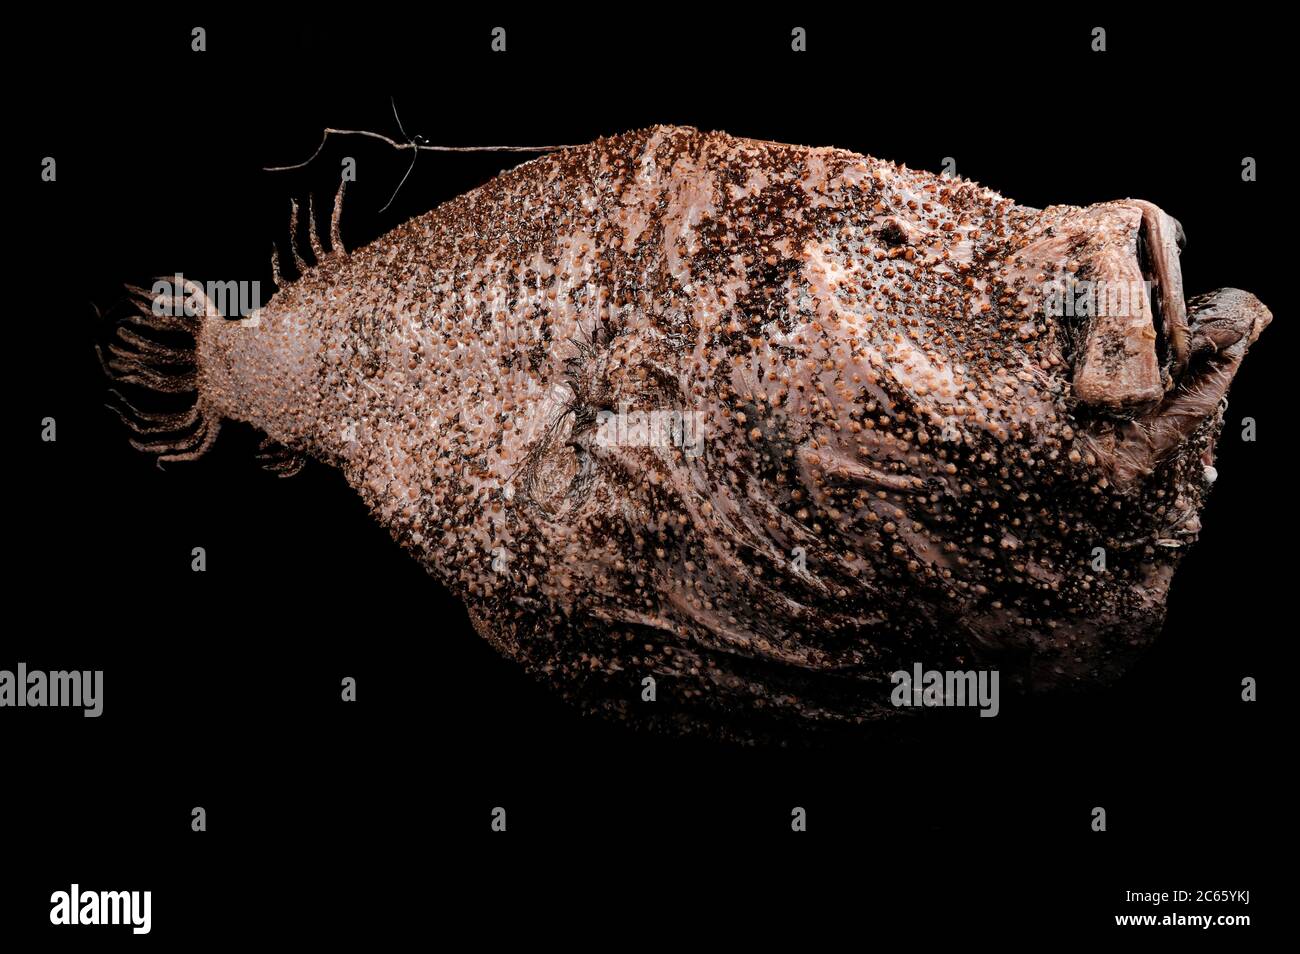 Tiefseefischer (Ceratias holboelli) das Bild entstand in Kooperation mit dem Zoologischen Museum Universität Hamburg Stockfoto